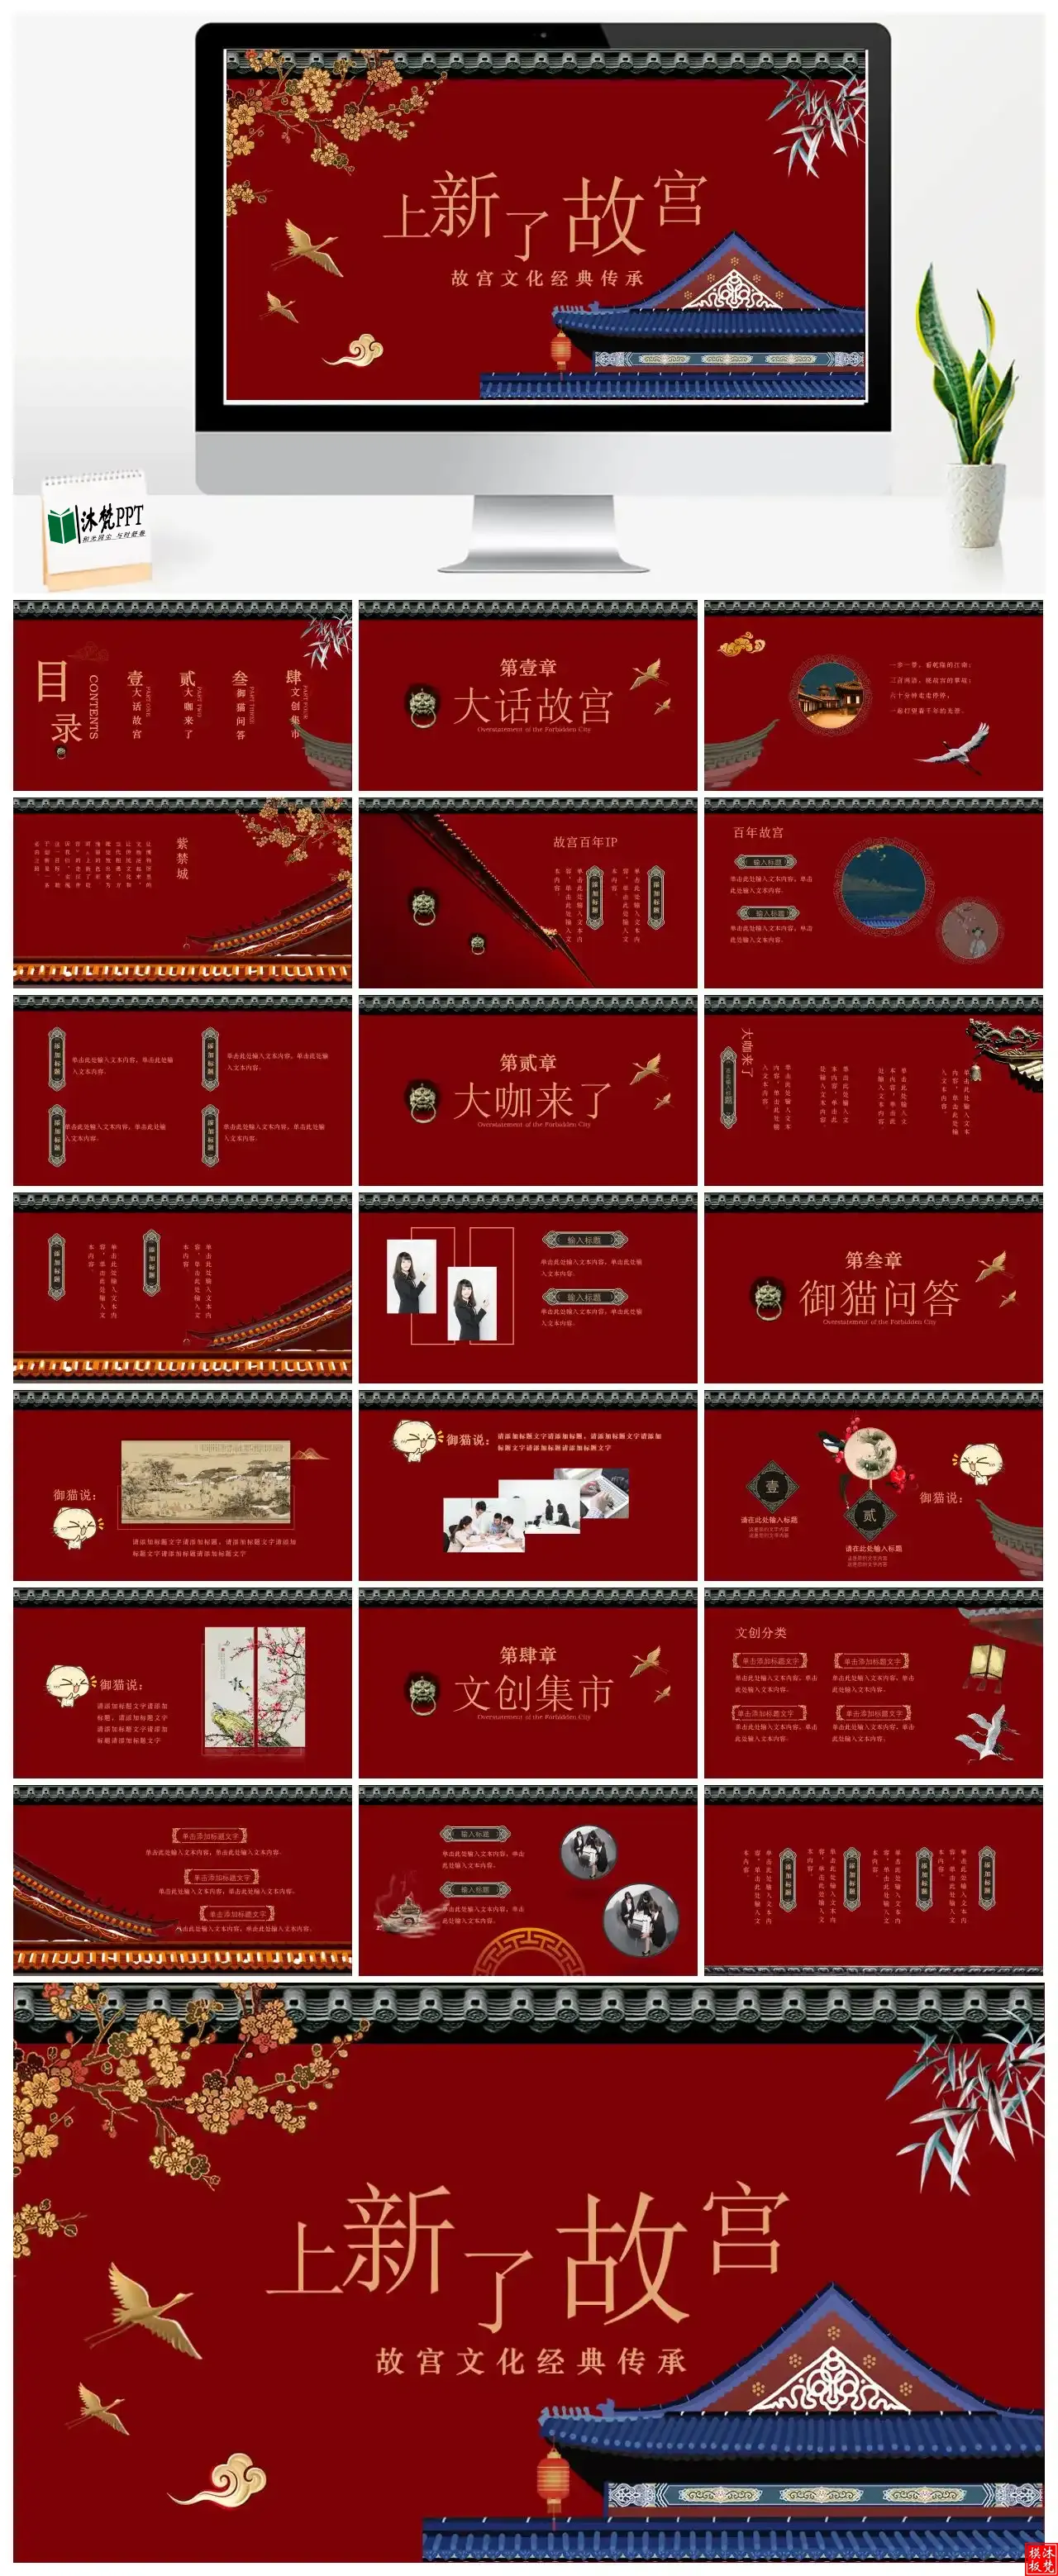 【0200】古典古风故宫文化经典传承PPT模板